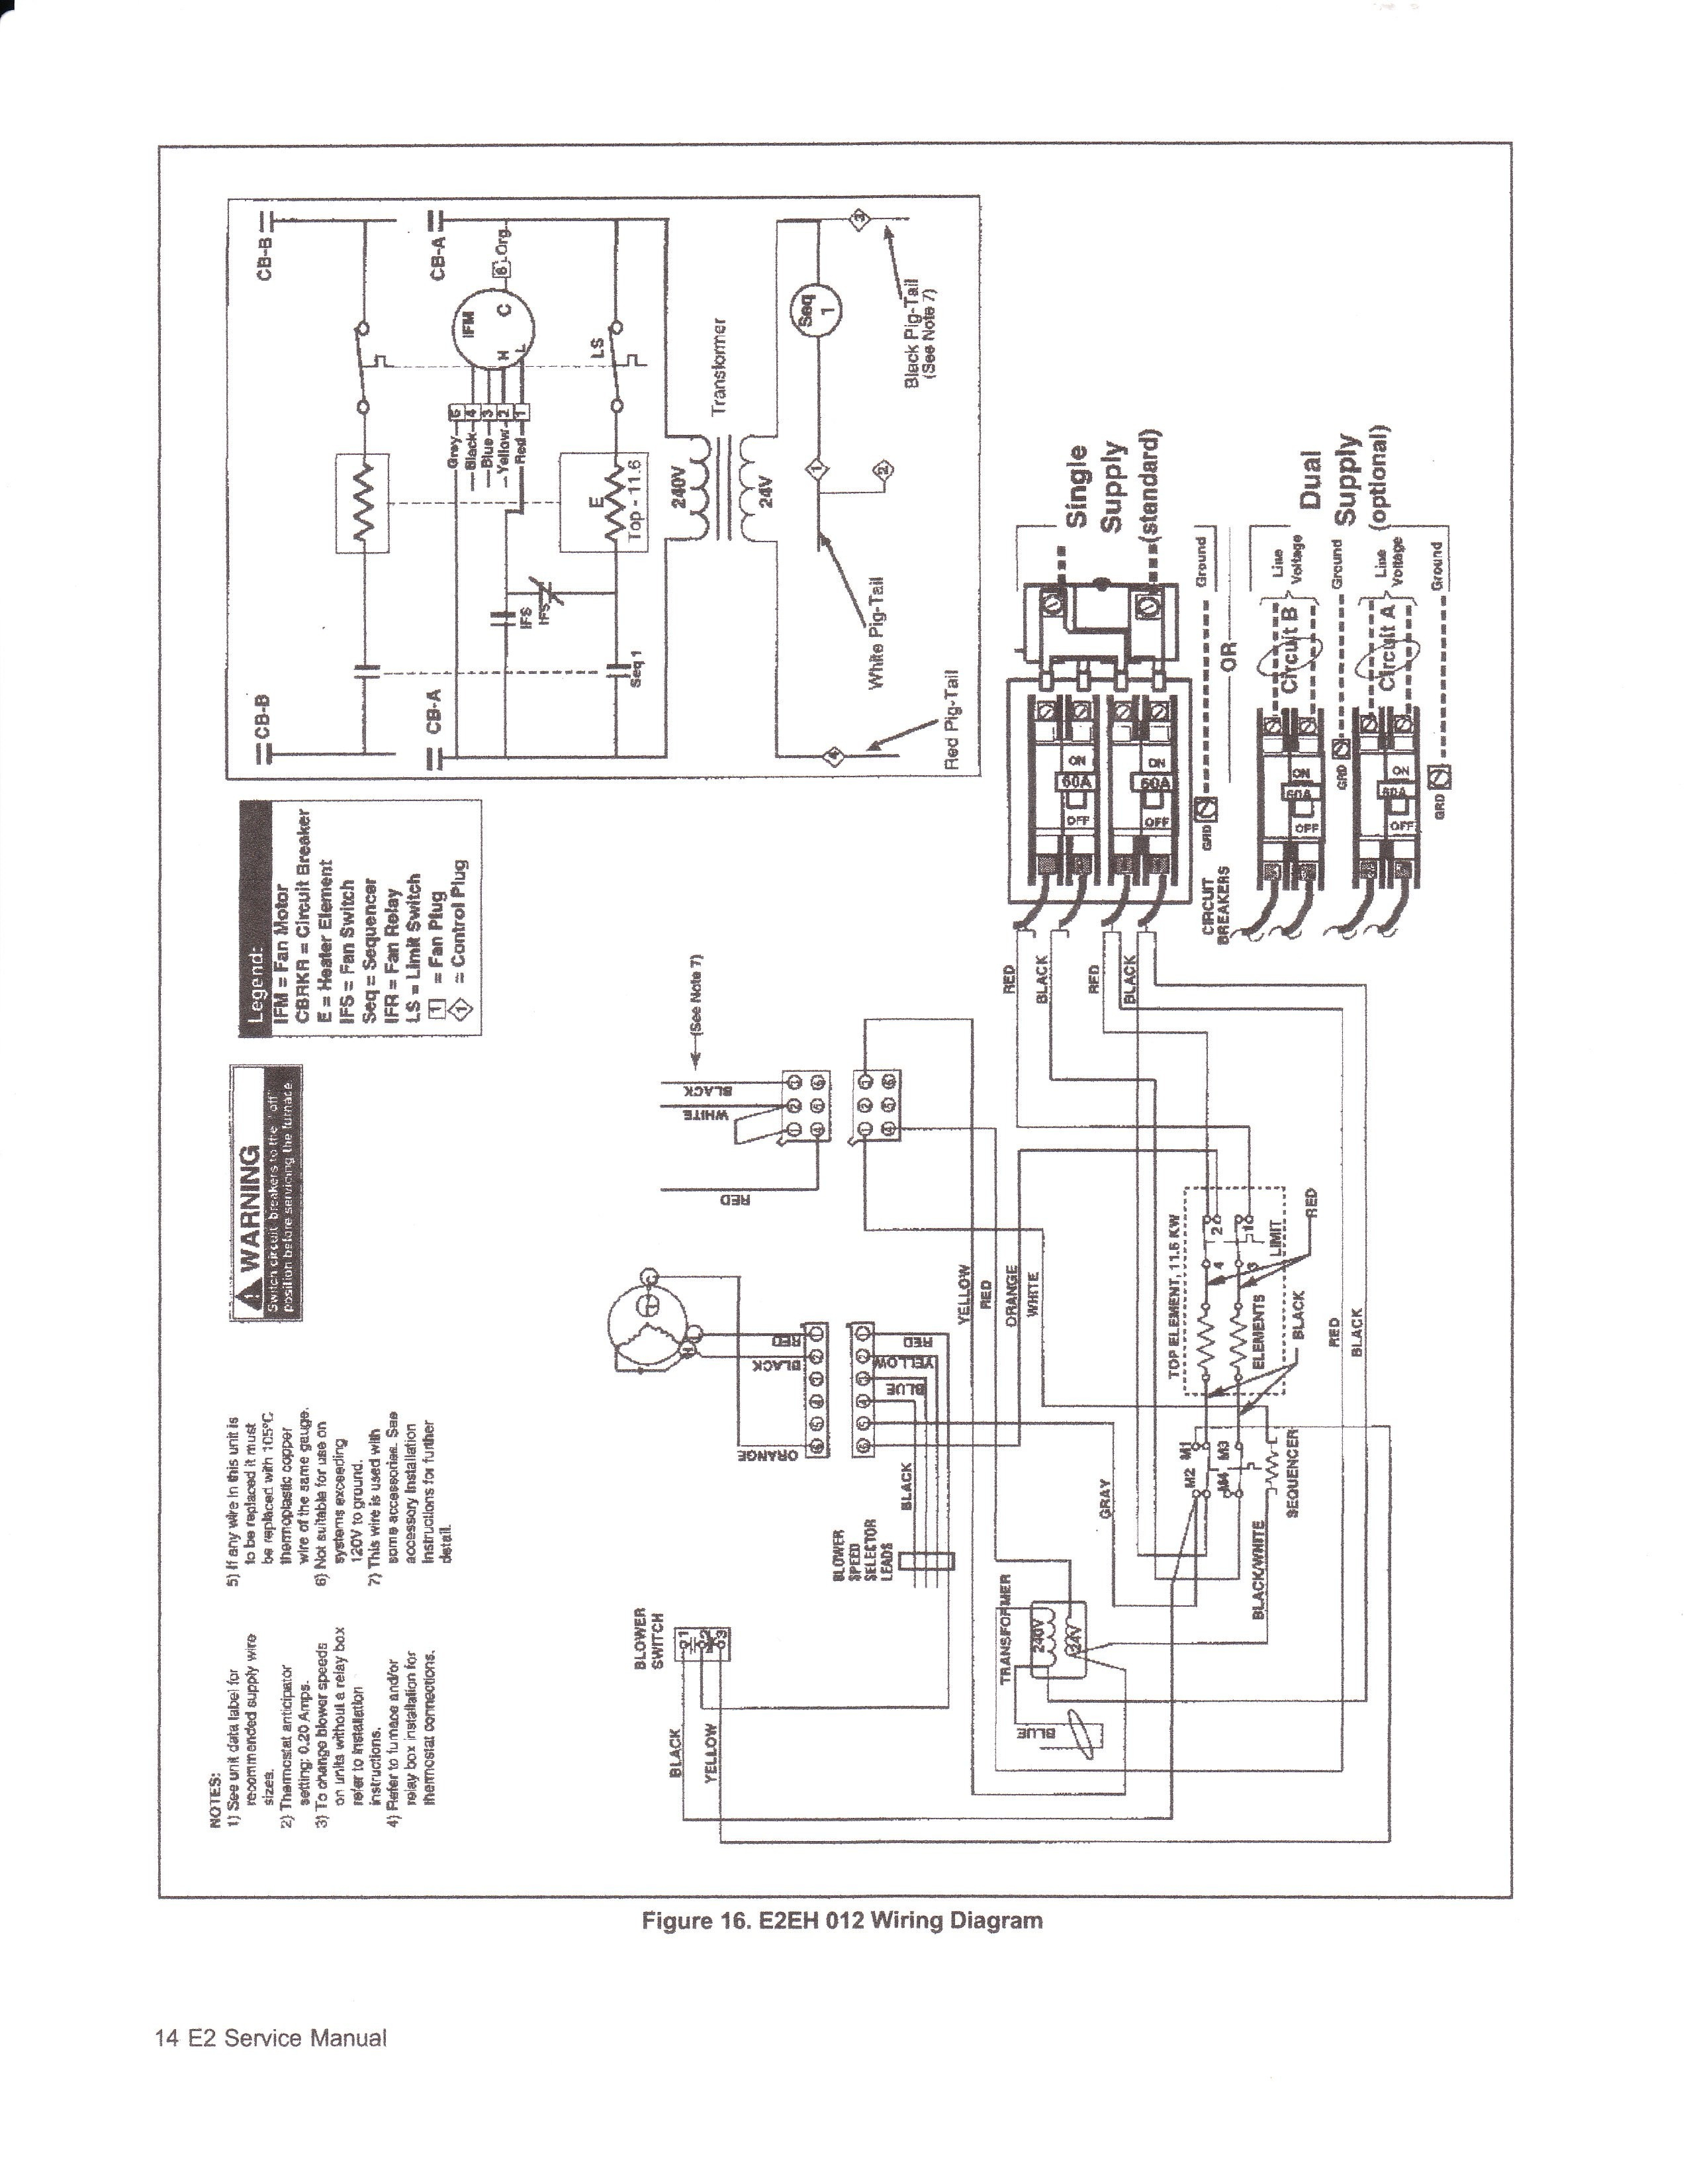 Miller Electric Furnace Wiring Diagram - Wiring Diagram Data - Nordyne Wiring Diagram Electric Furnace